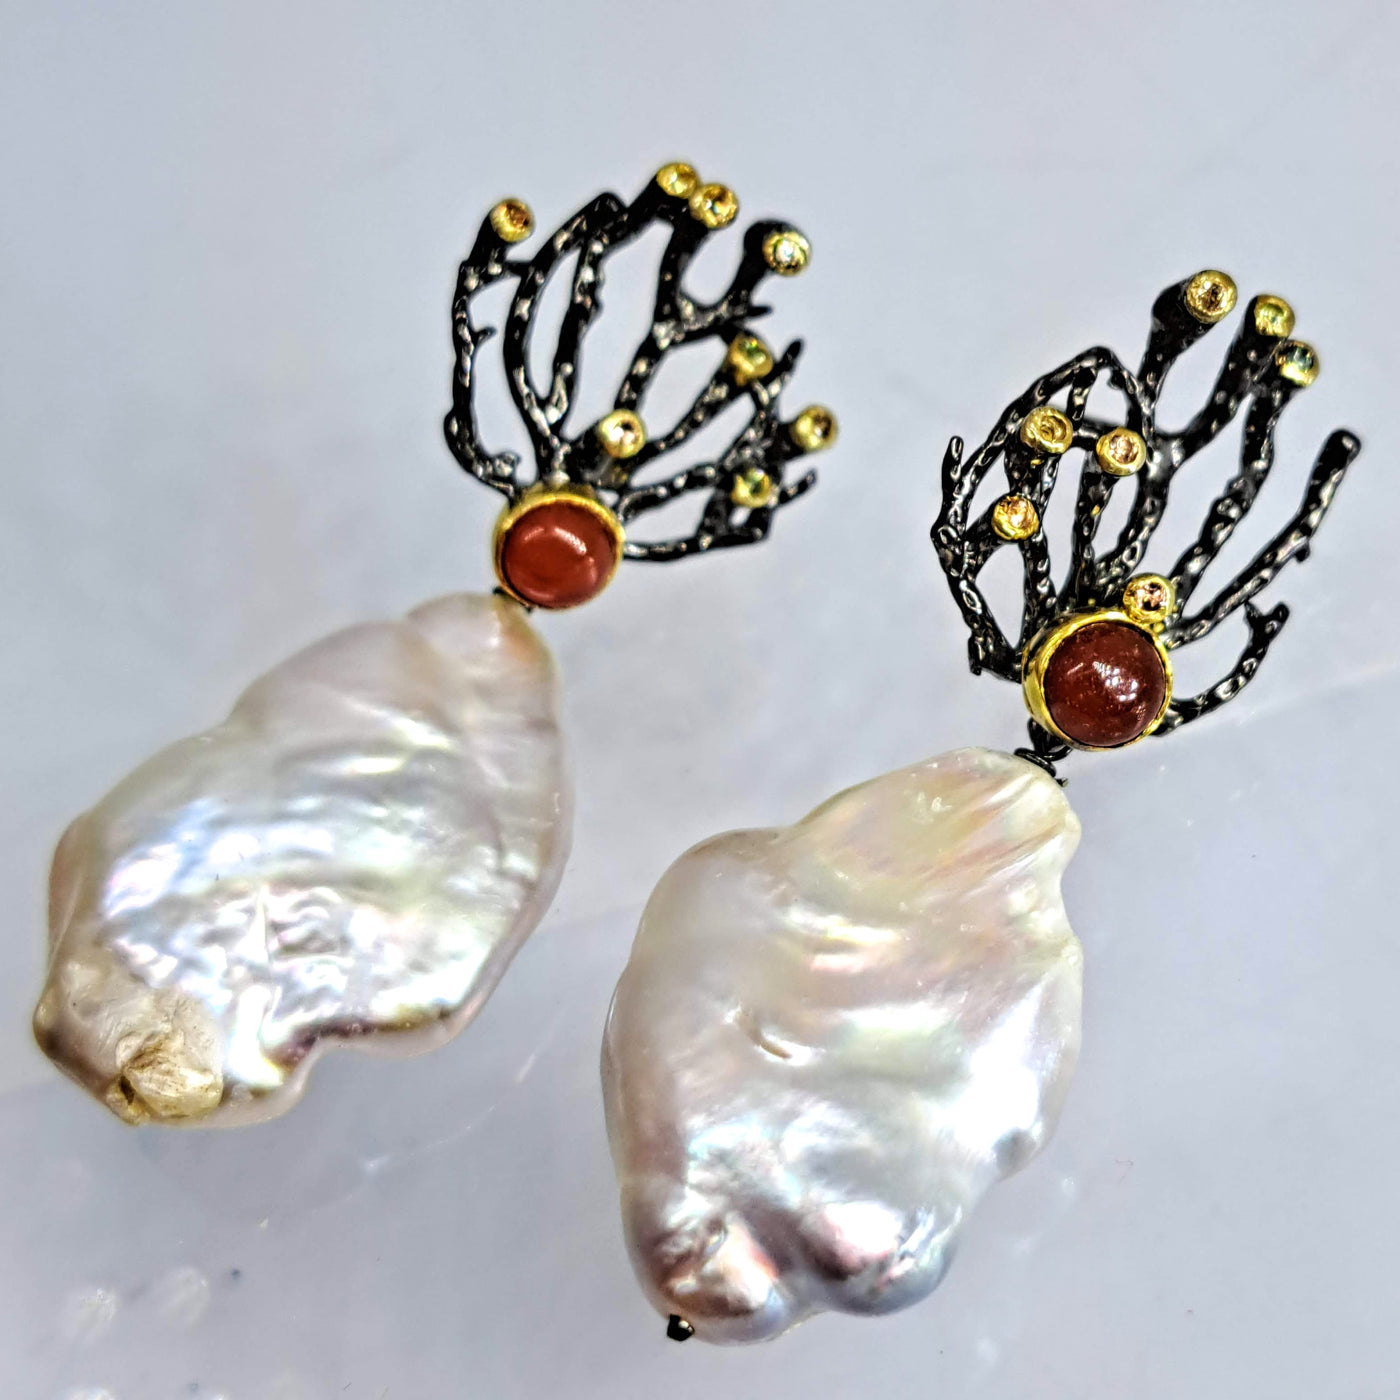 "Sea Fan-Tastic" 2.25" Earrings - Baroque Pearls, Carnelian, Sapphire, Black Sterling, 18k Gold